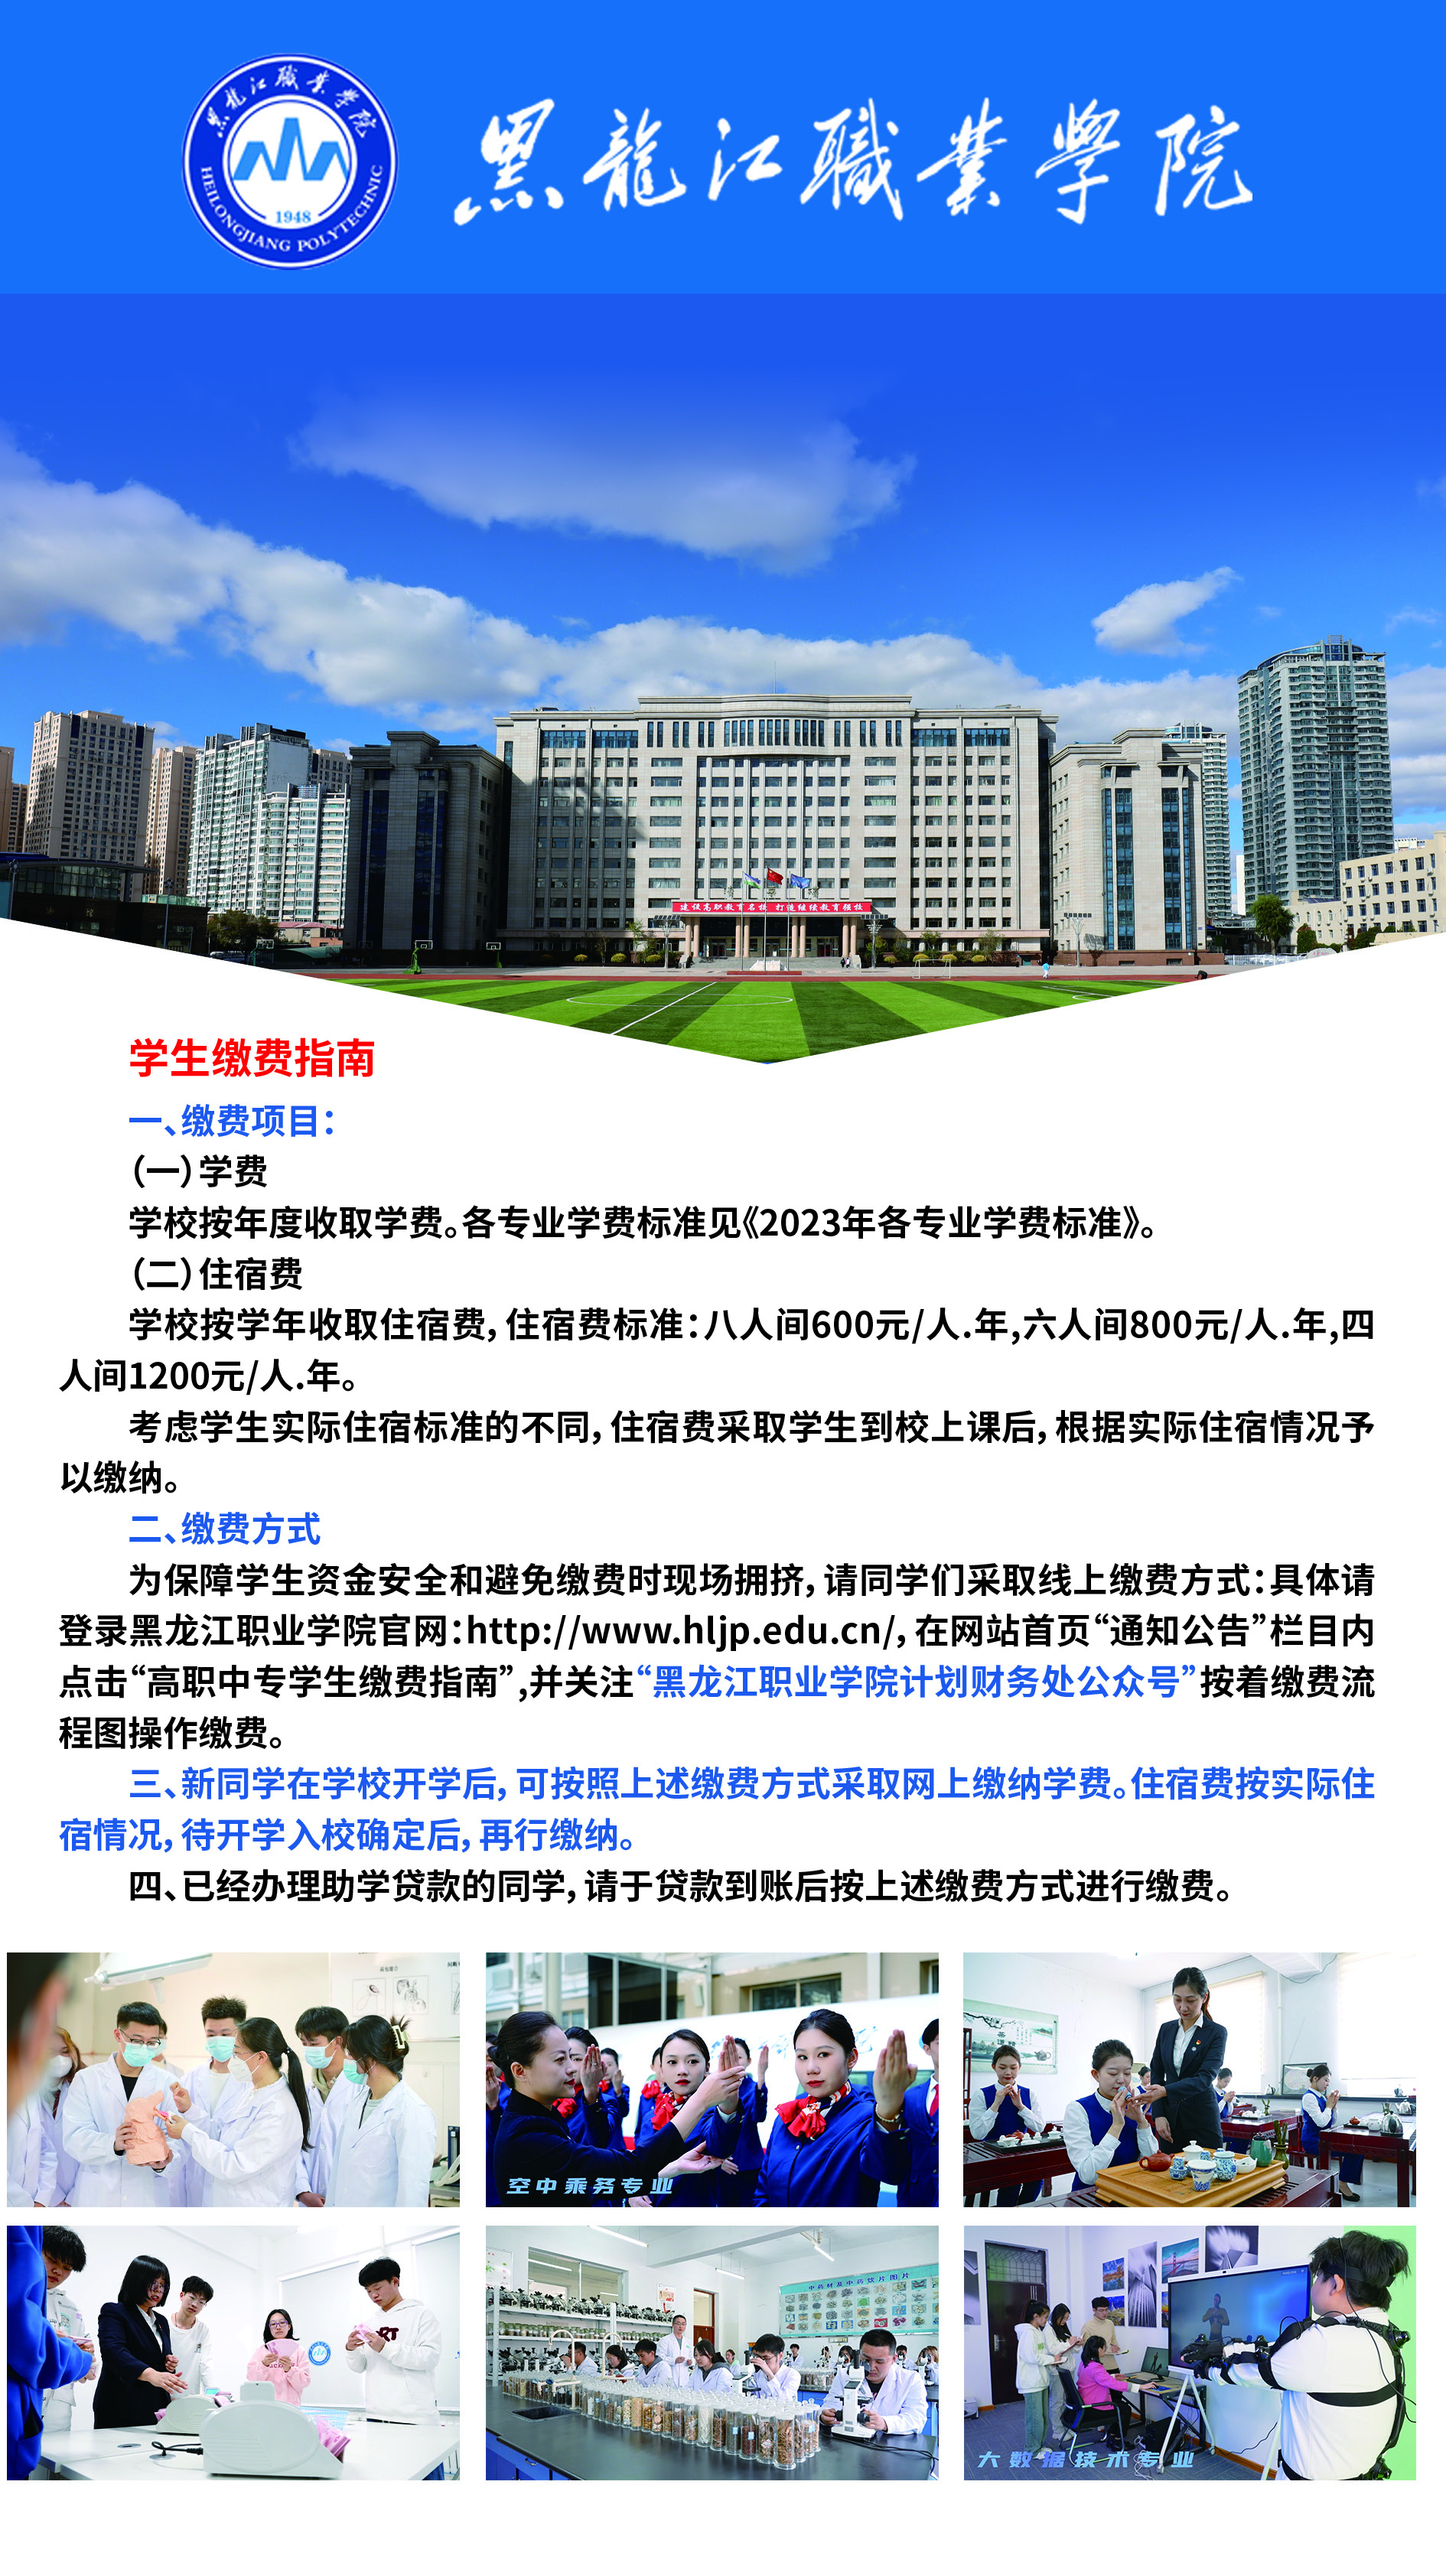 黑龙江农业工程职业学院2018年招生人数创近年新高--黑龙江教育资讯--中国教育在线